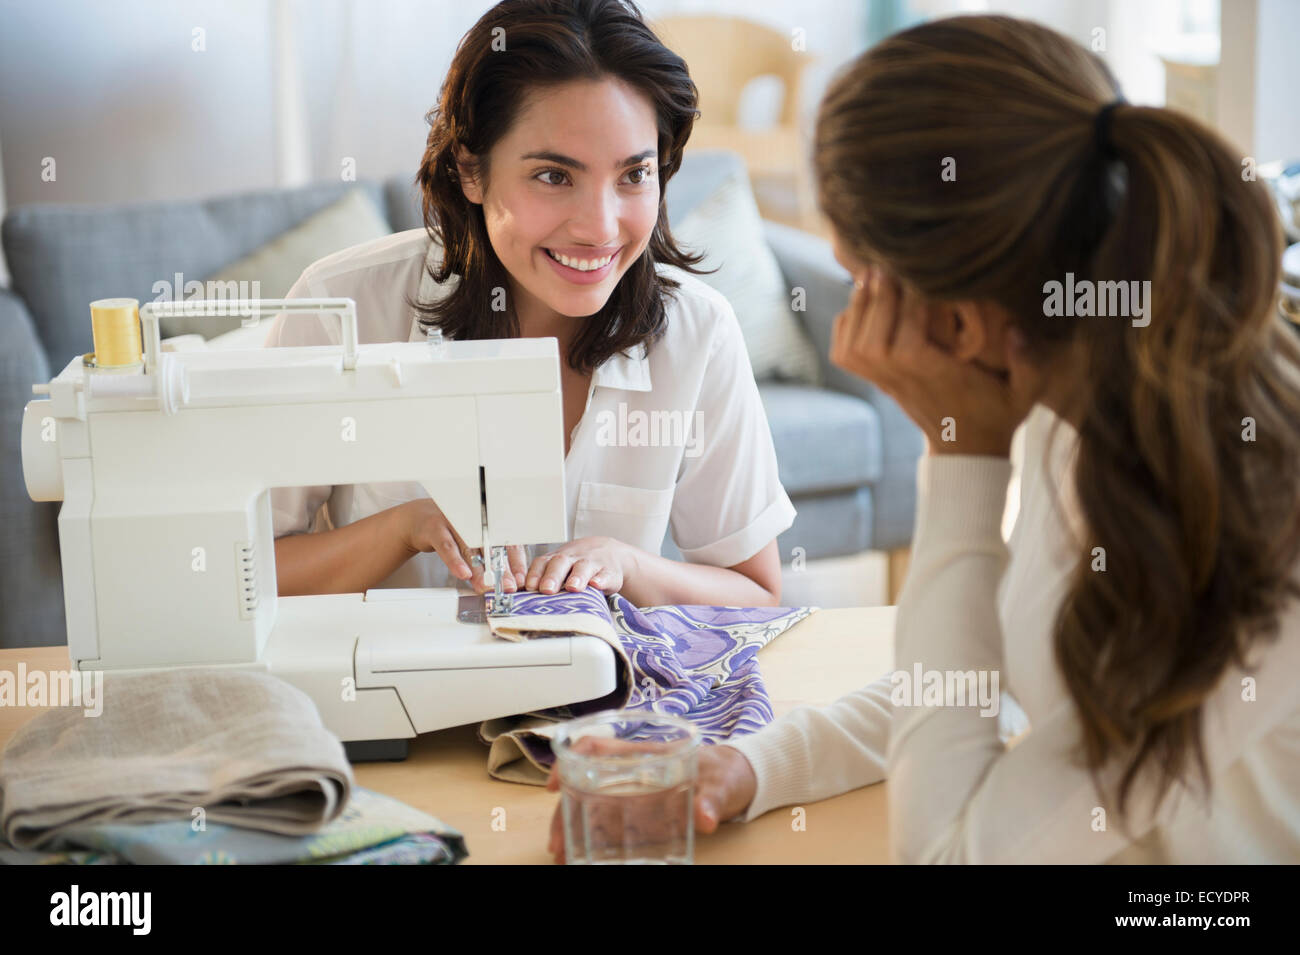 Hispanic women using sewing machine in living room Stock Photo